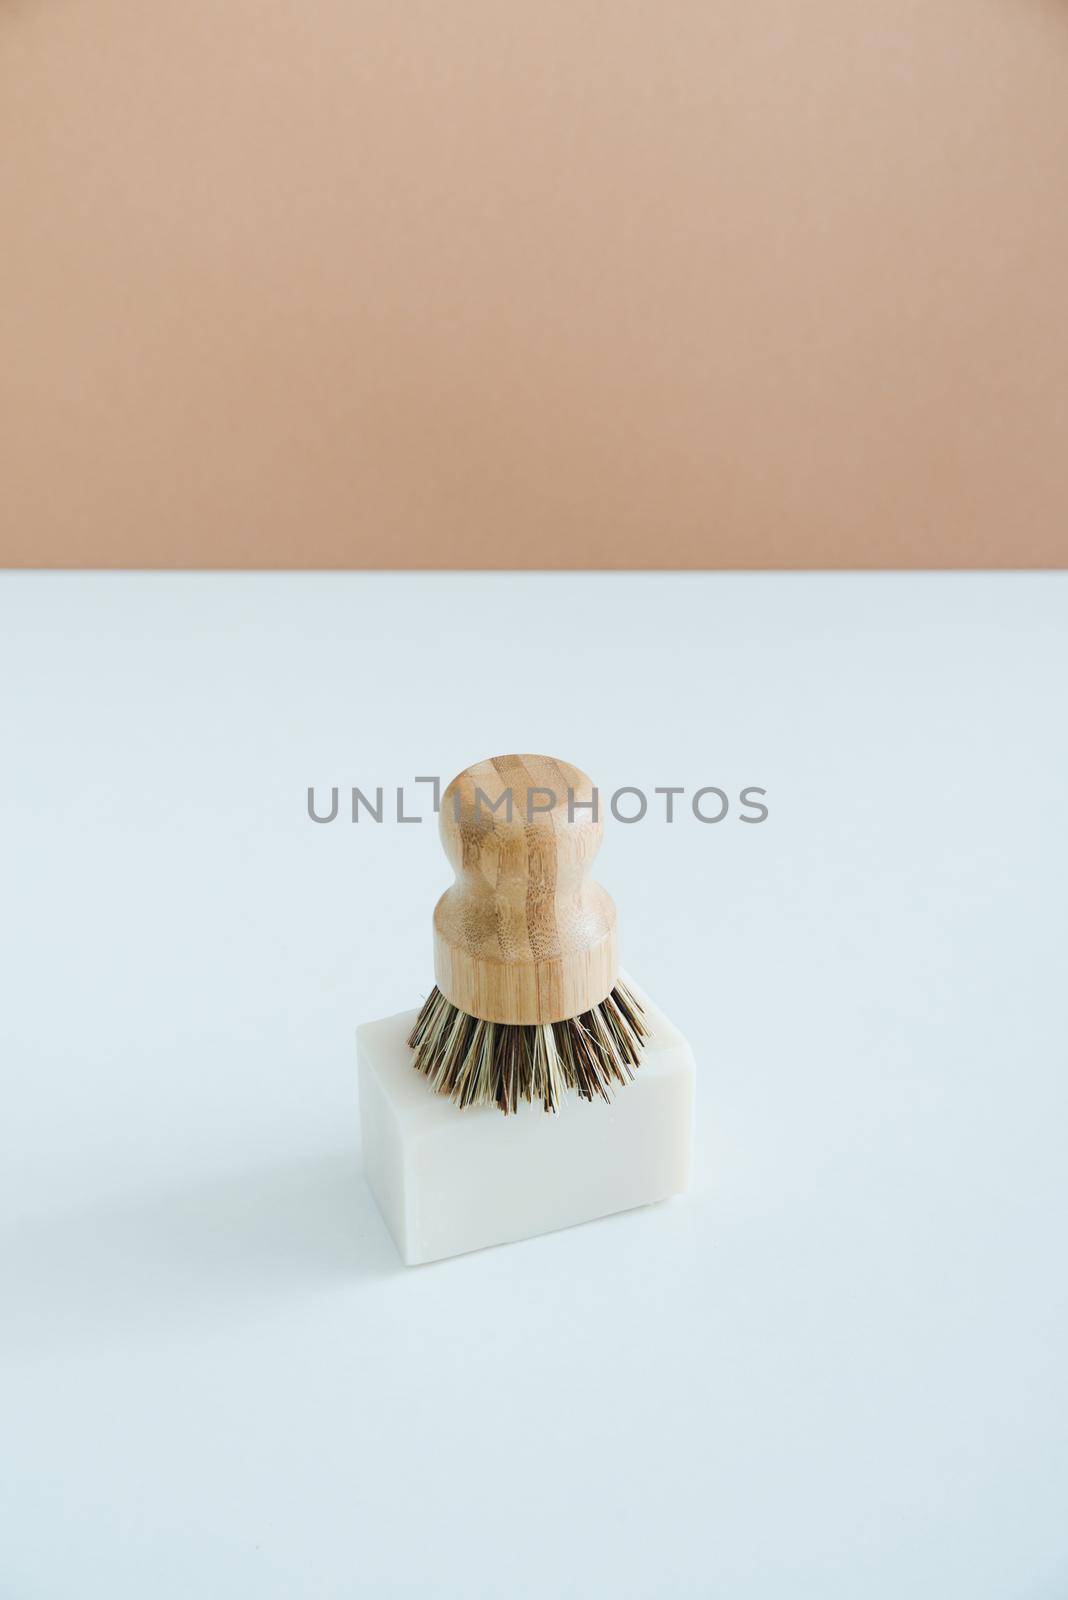 zero waste bamboo brush with soap for dishwashing in minimalistic style by maramorosz